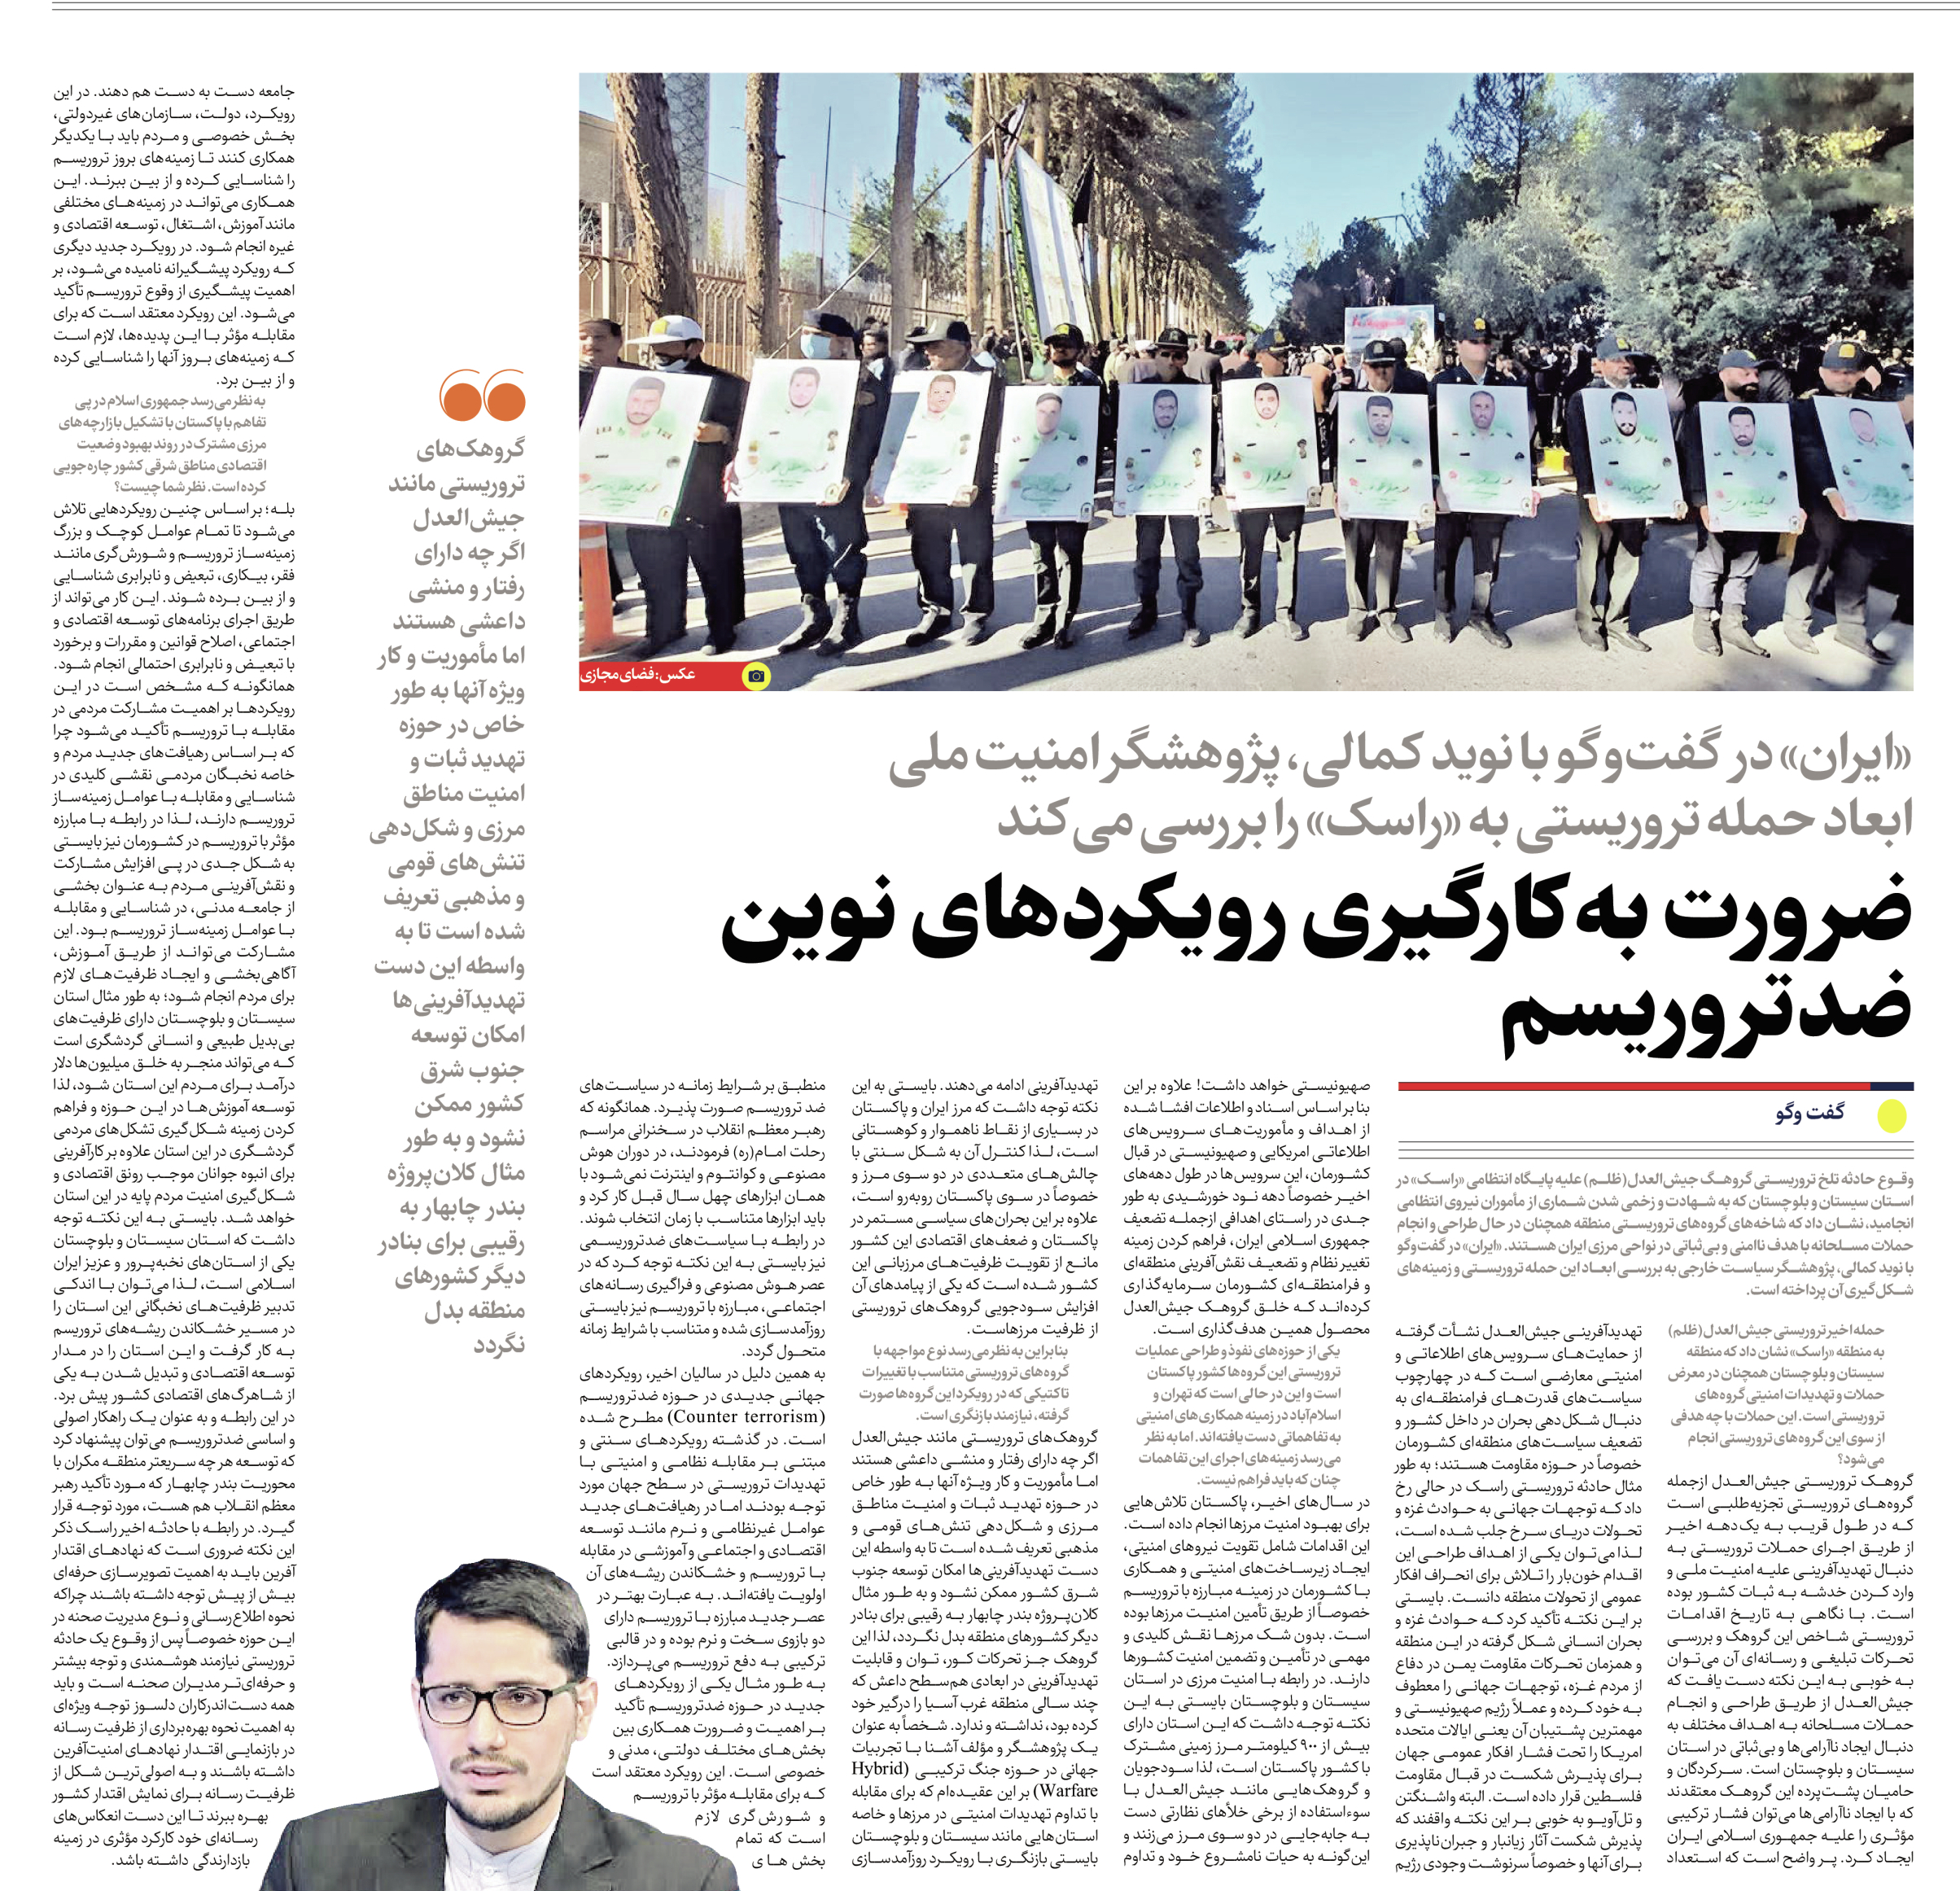 نوید کمالی - Navid Kamali - Iran newspaper